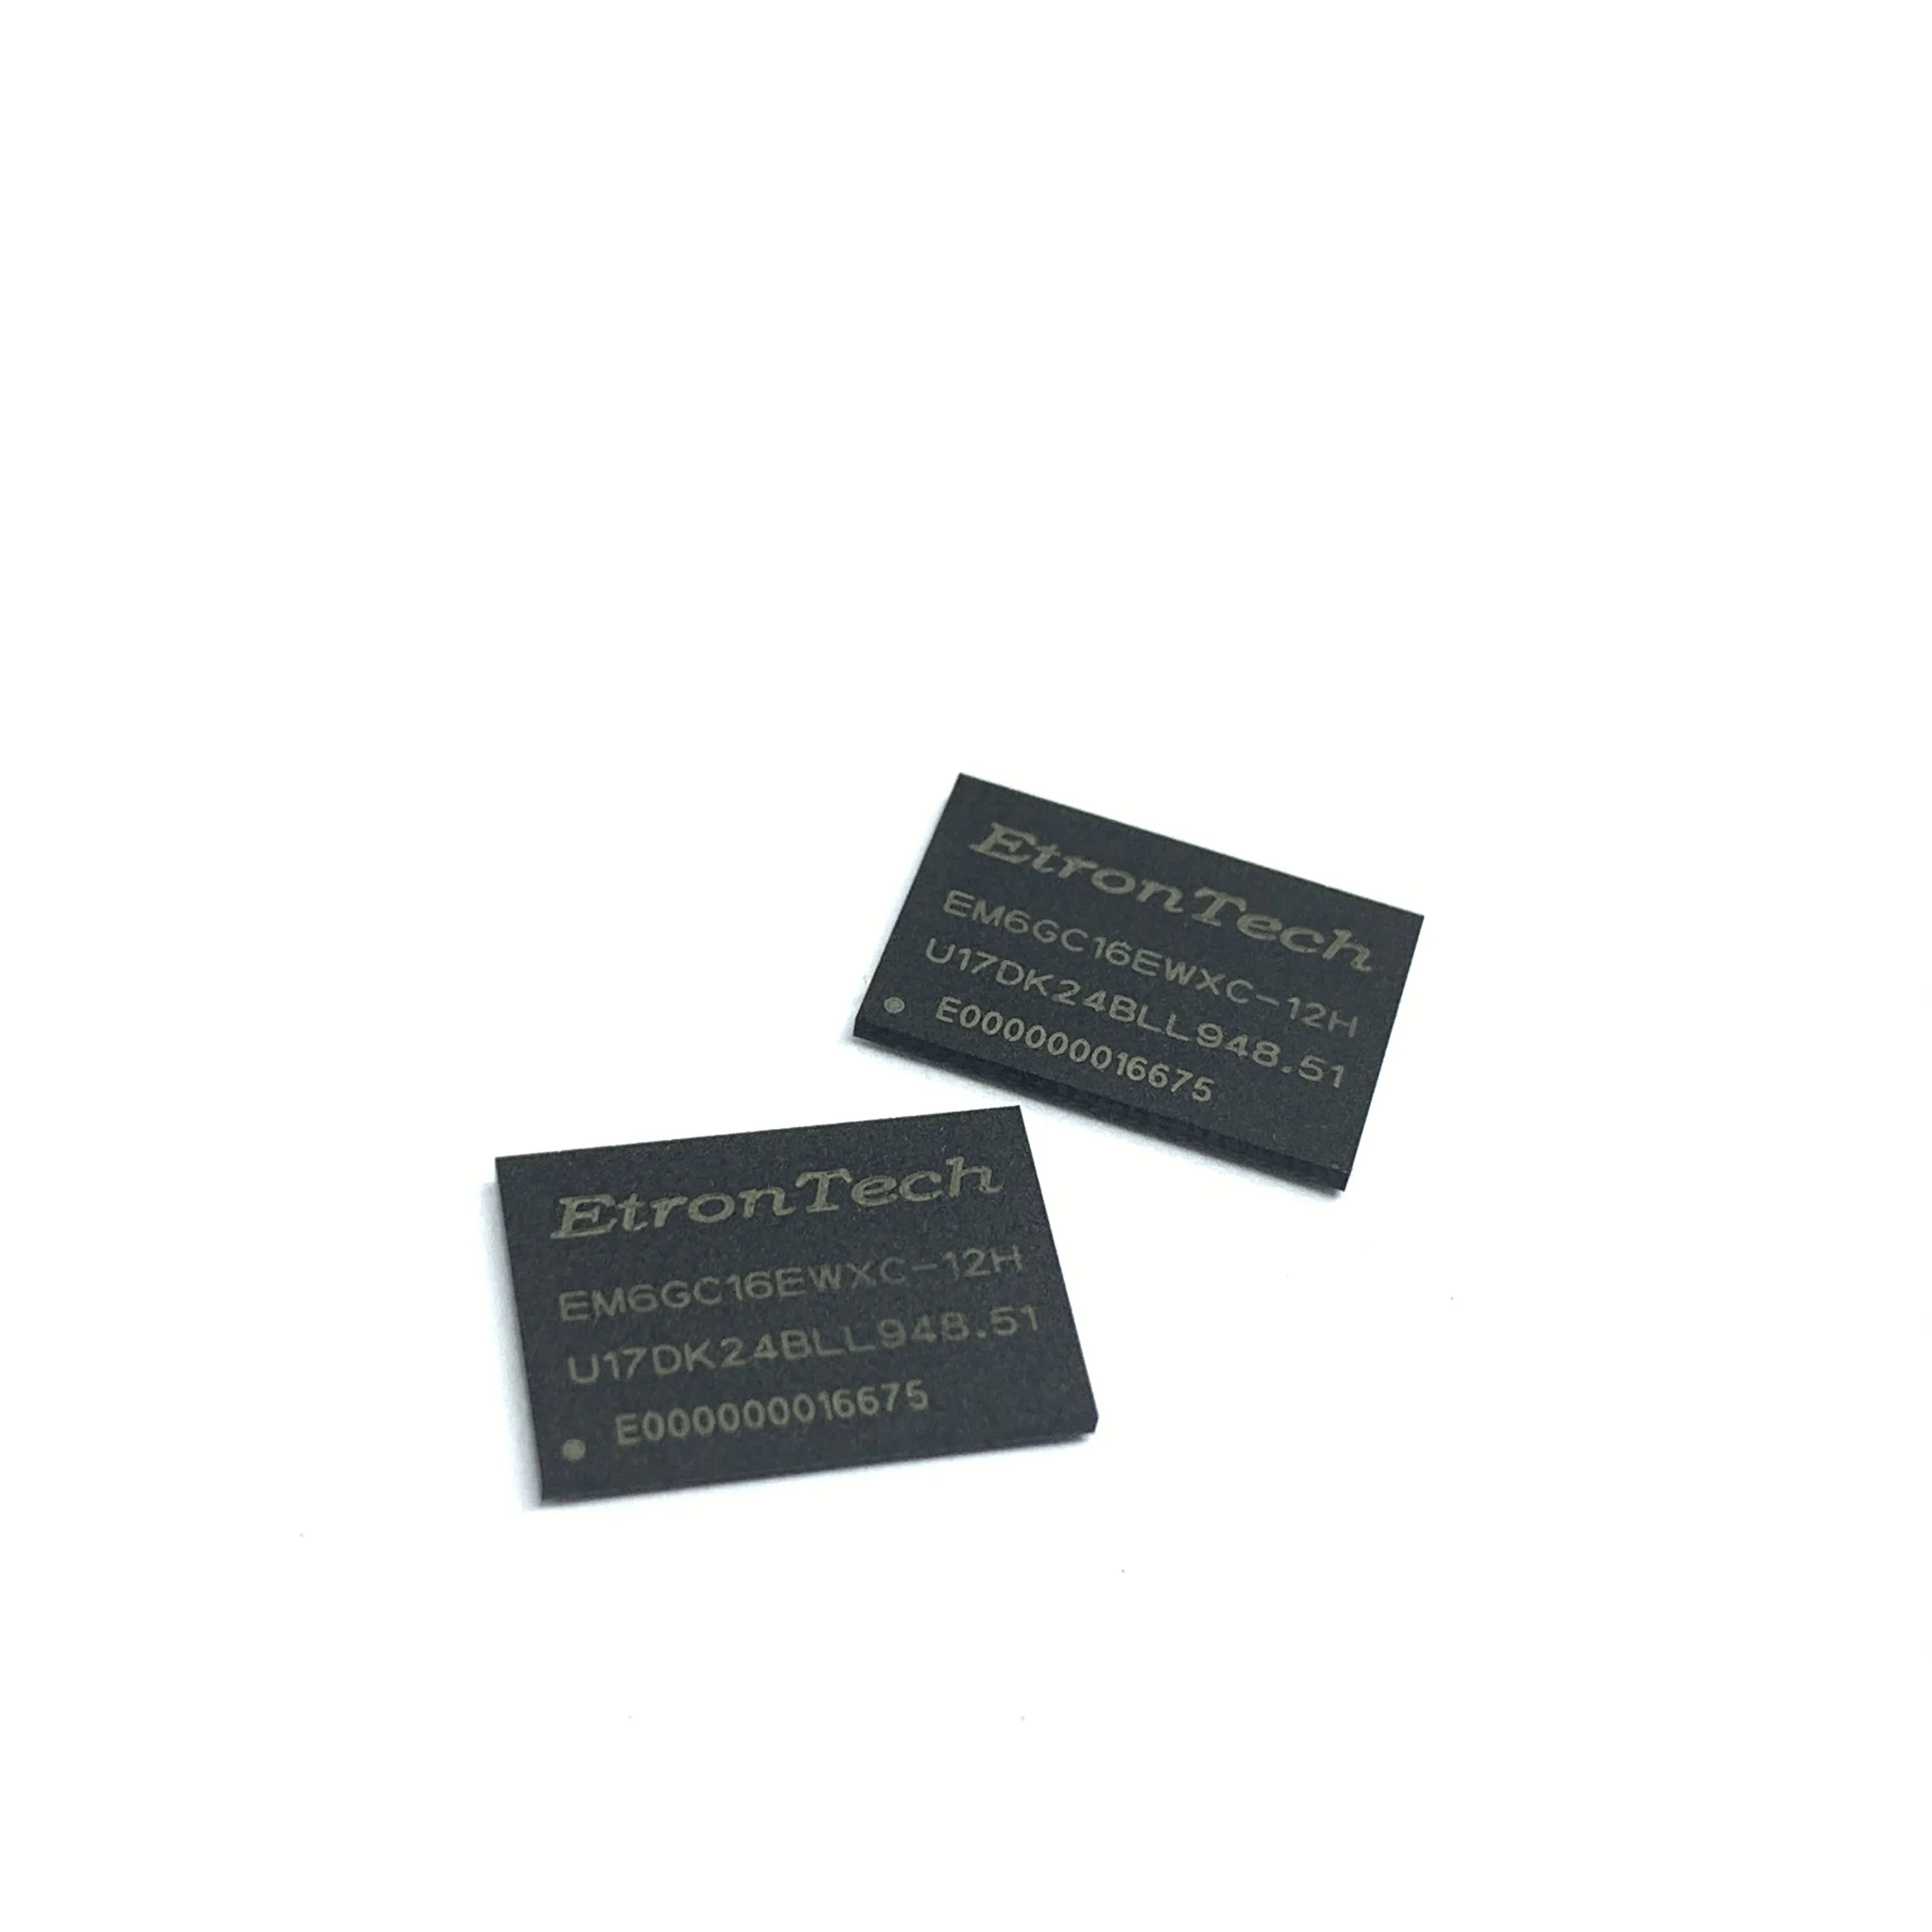 Merrillchip 고품질 ic 칩 전자 부품 집적 회로 메모리 DDR DRAM EM6GC16EWXC-12H